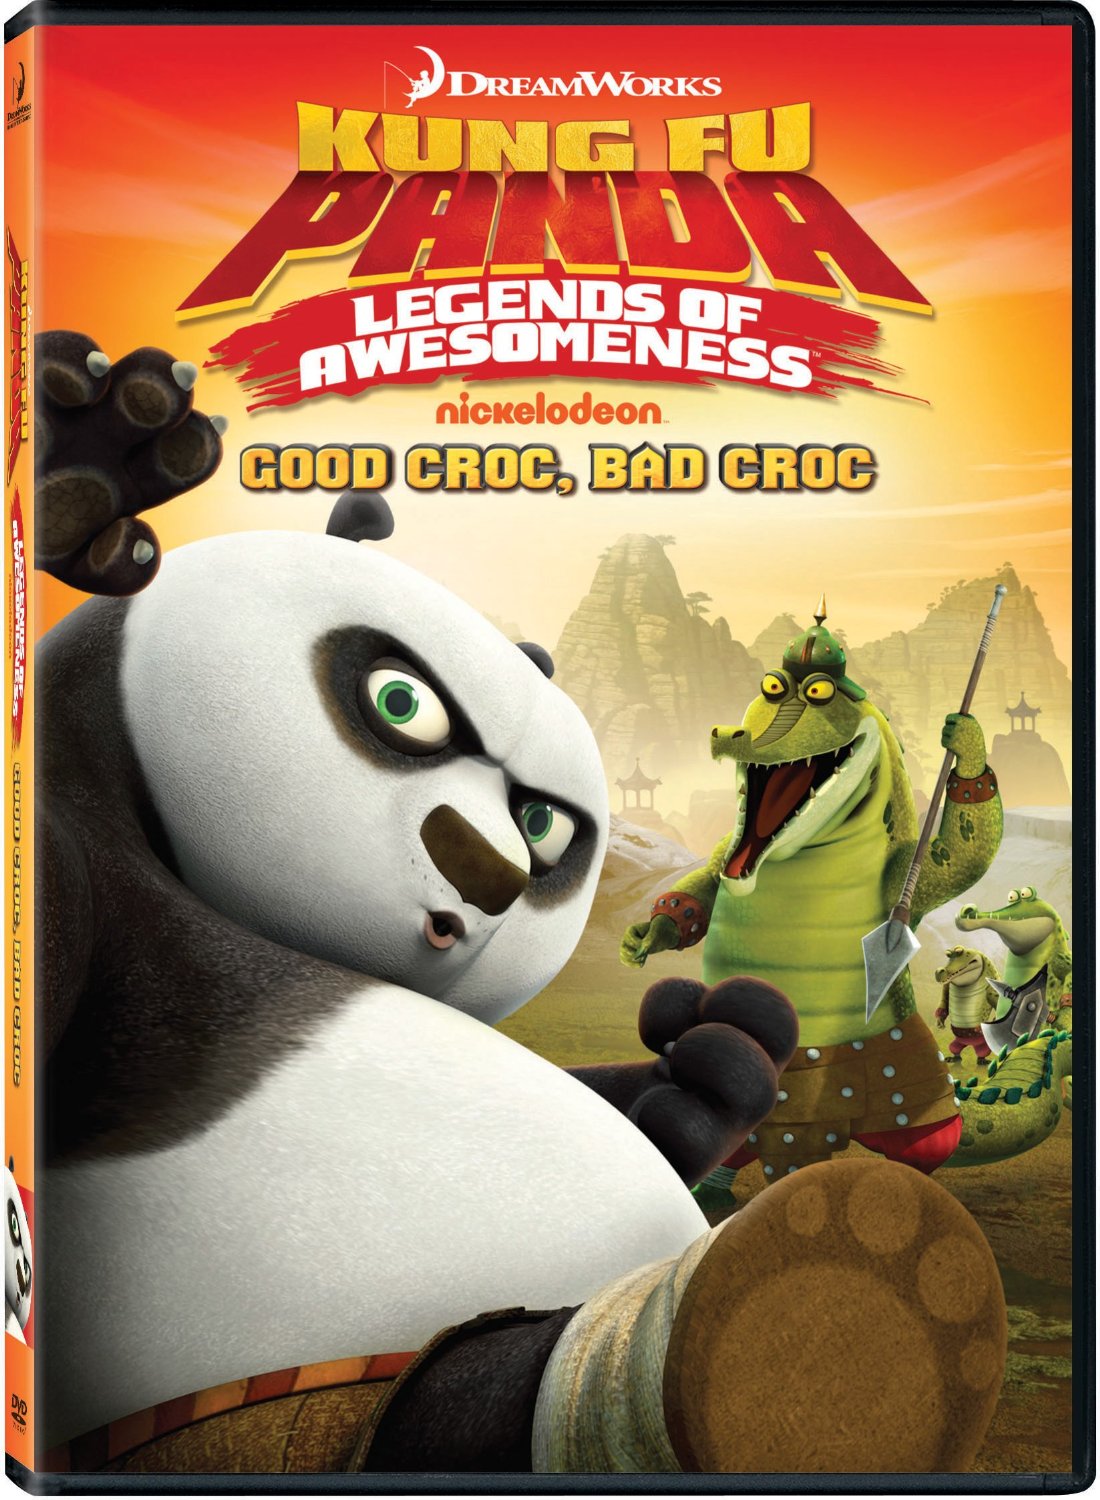 http://upcomingdiscs.com/ecs_covers/kung-fu-panda-legends-of-awesomeness-good-croc-bad-croc-large.jpg